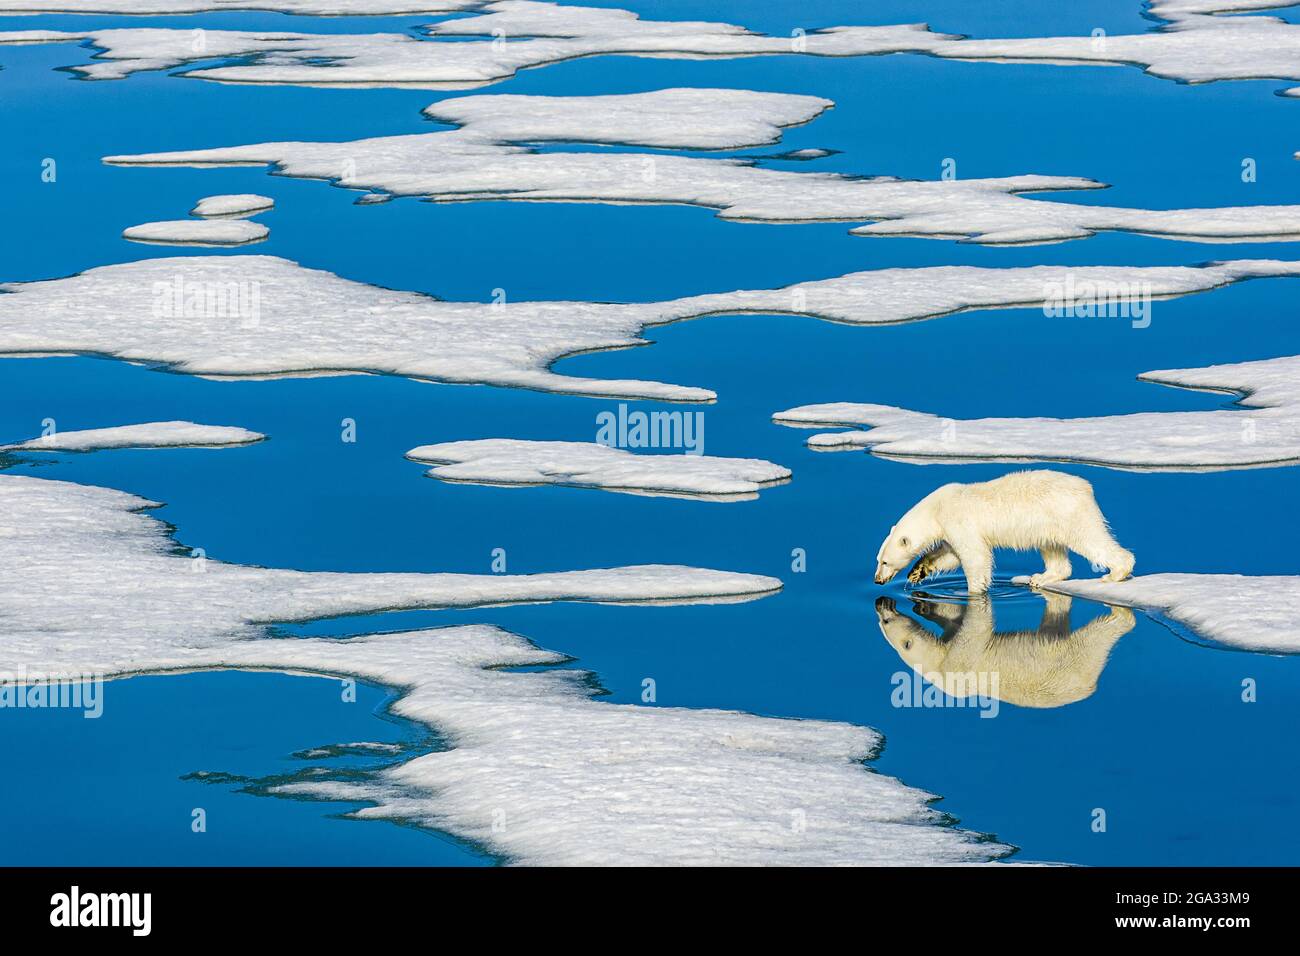 Orso polare (Ursus maritimus) che cammina sul ghiaccio fondente con piscine d'acqua blu; Svalbard, Norvegia Foto Stock